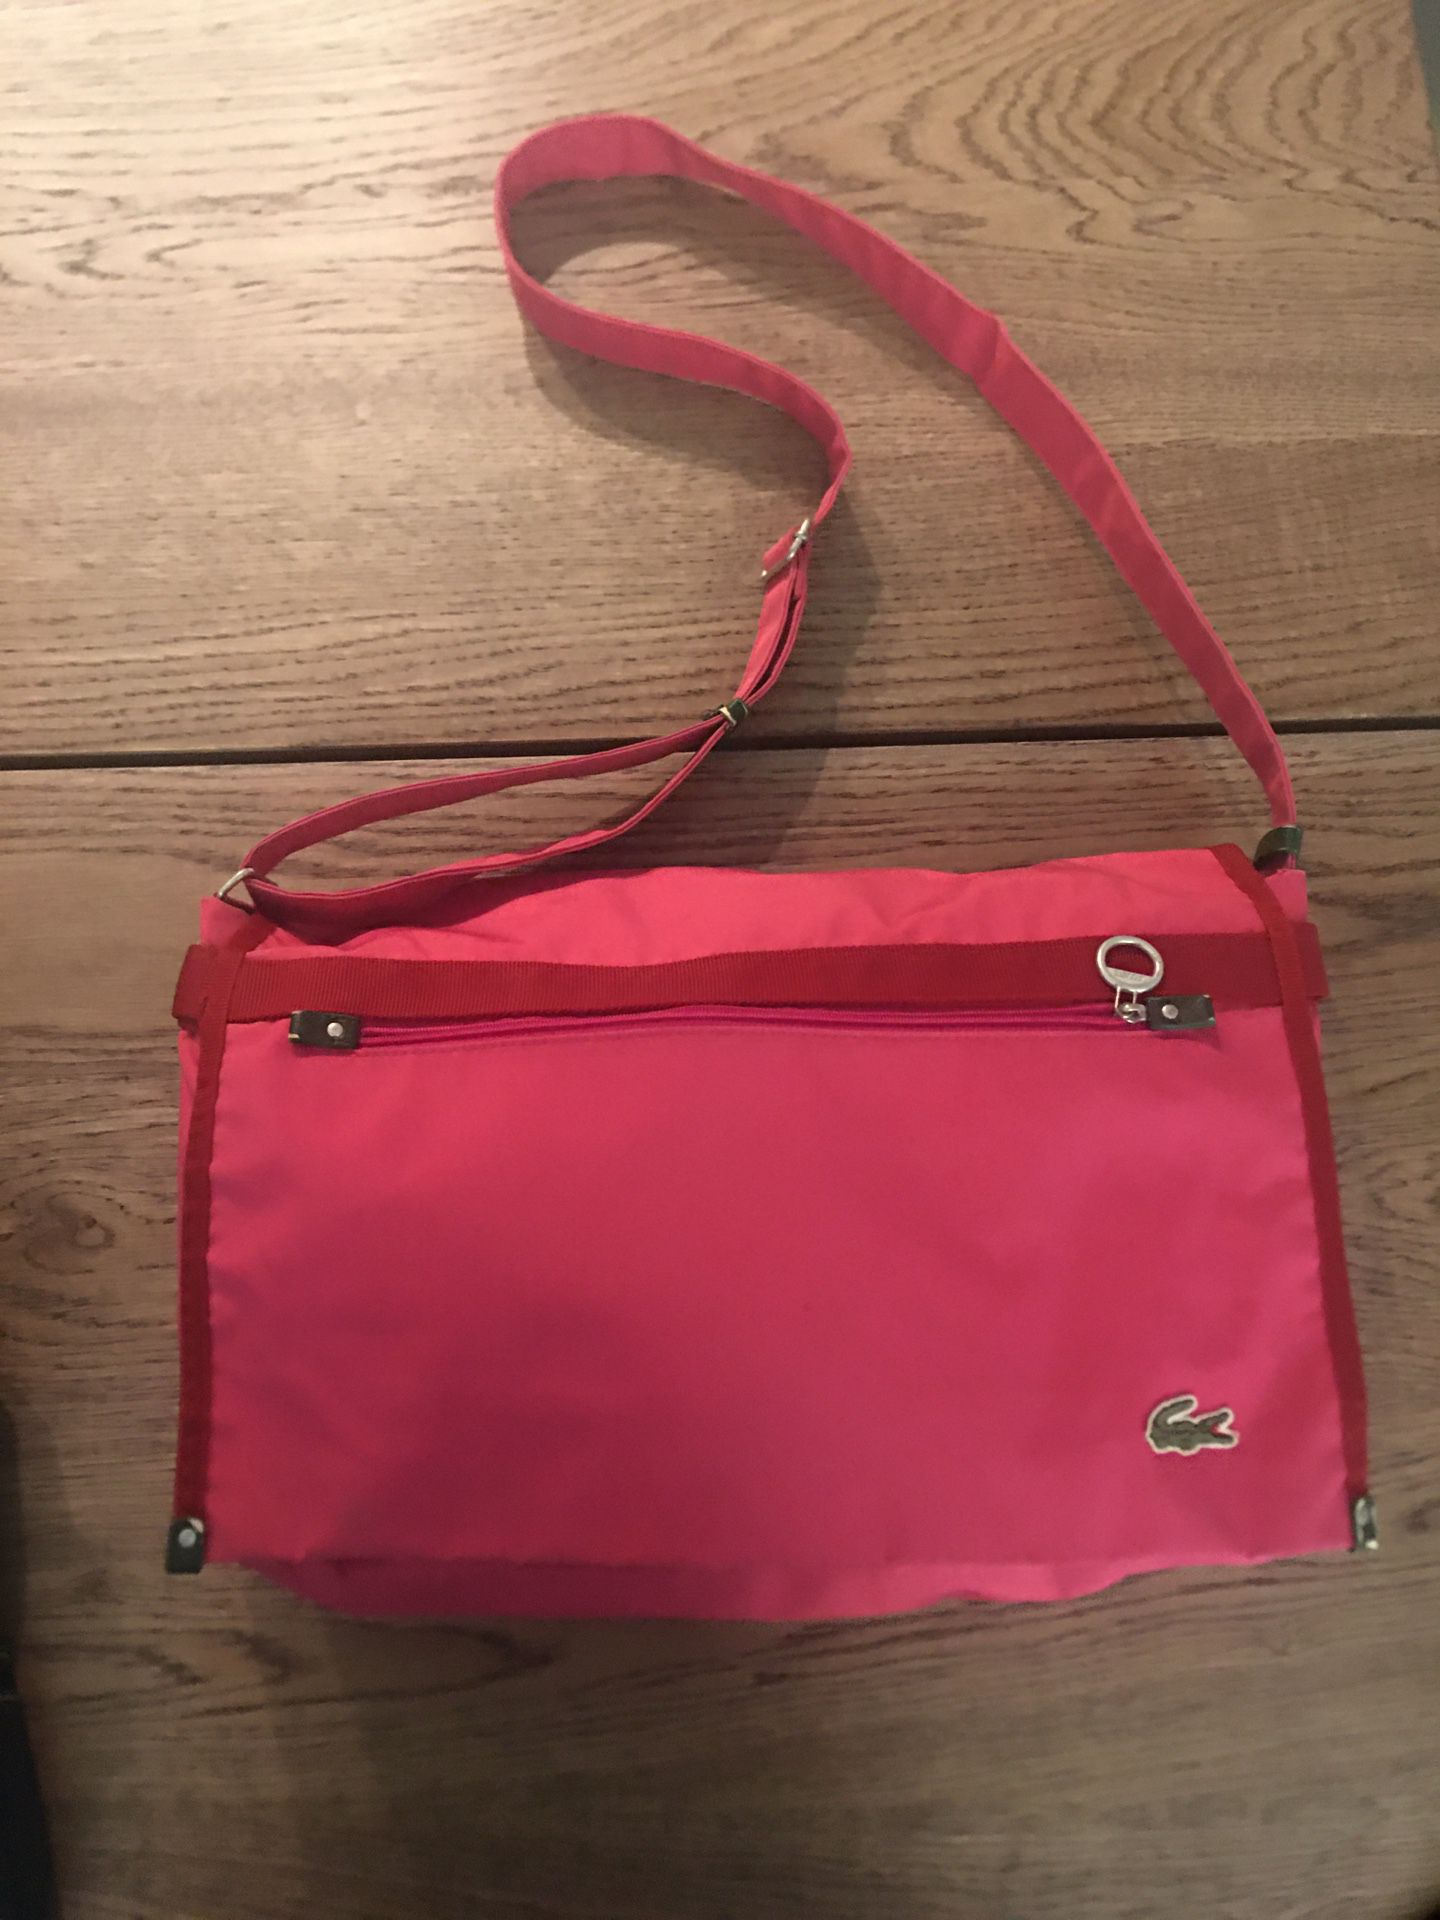 Lacoste pink messenger bag